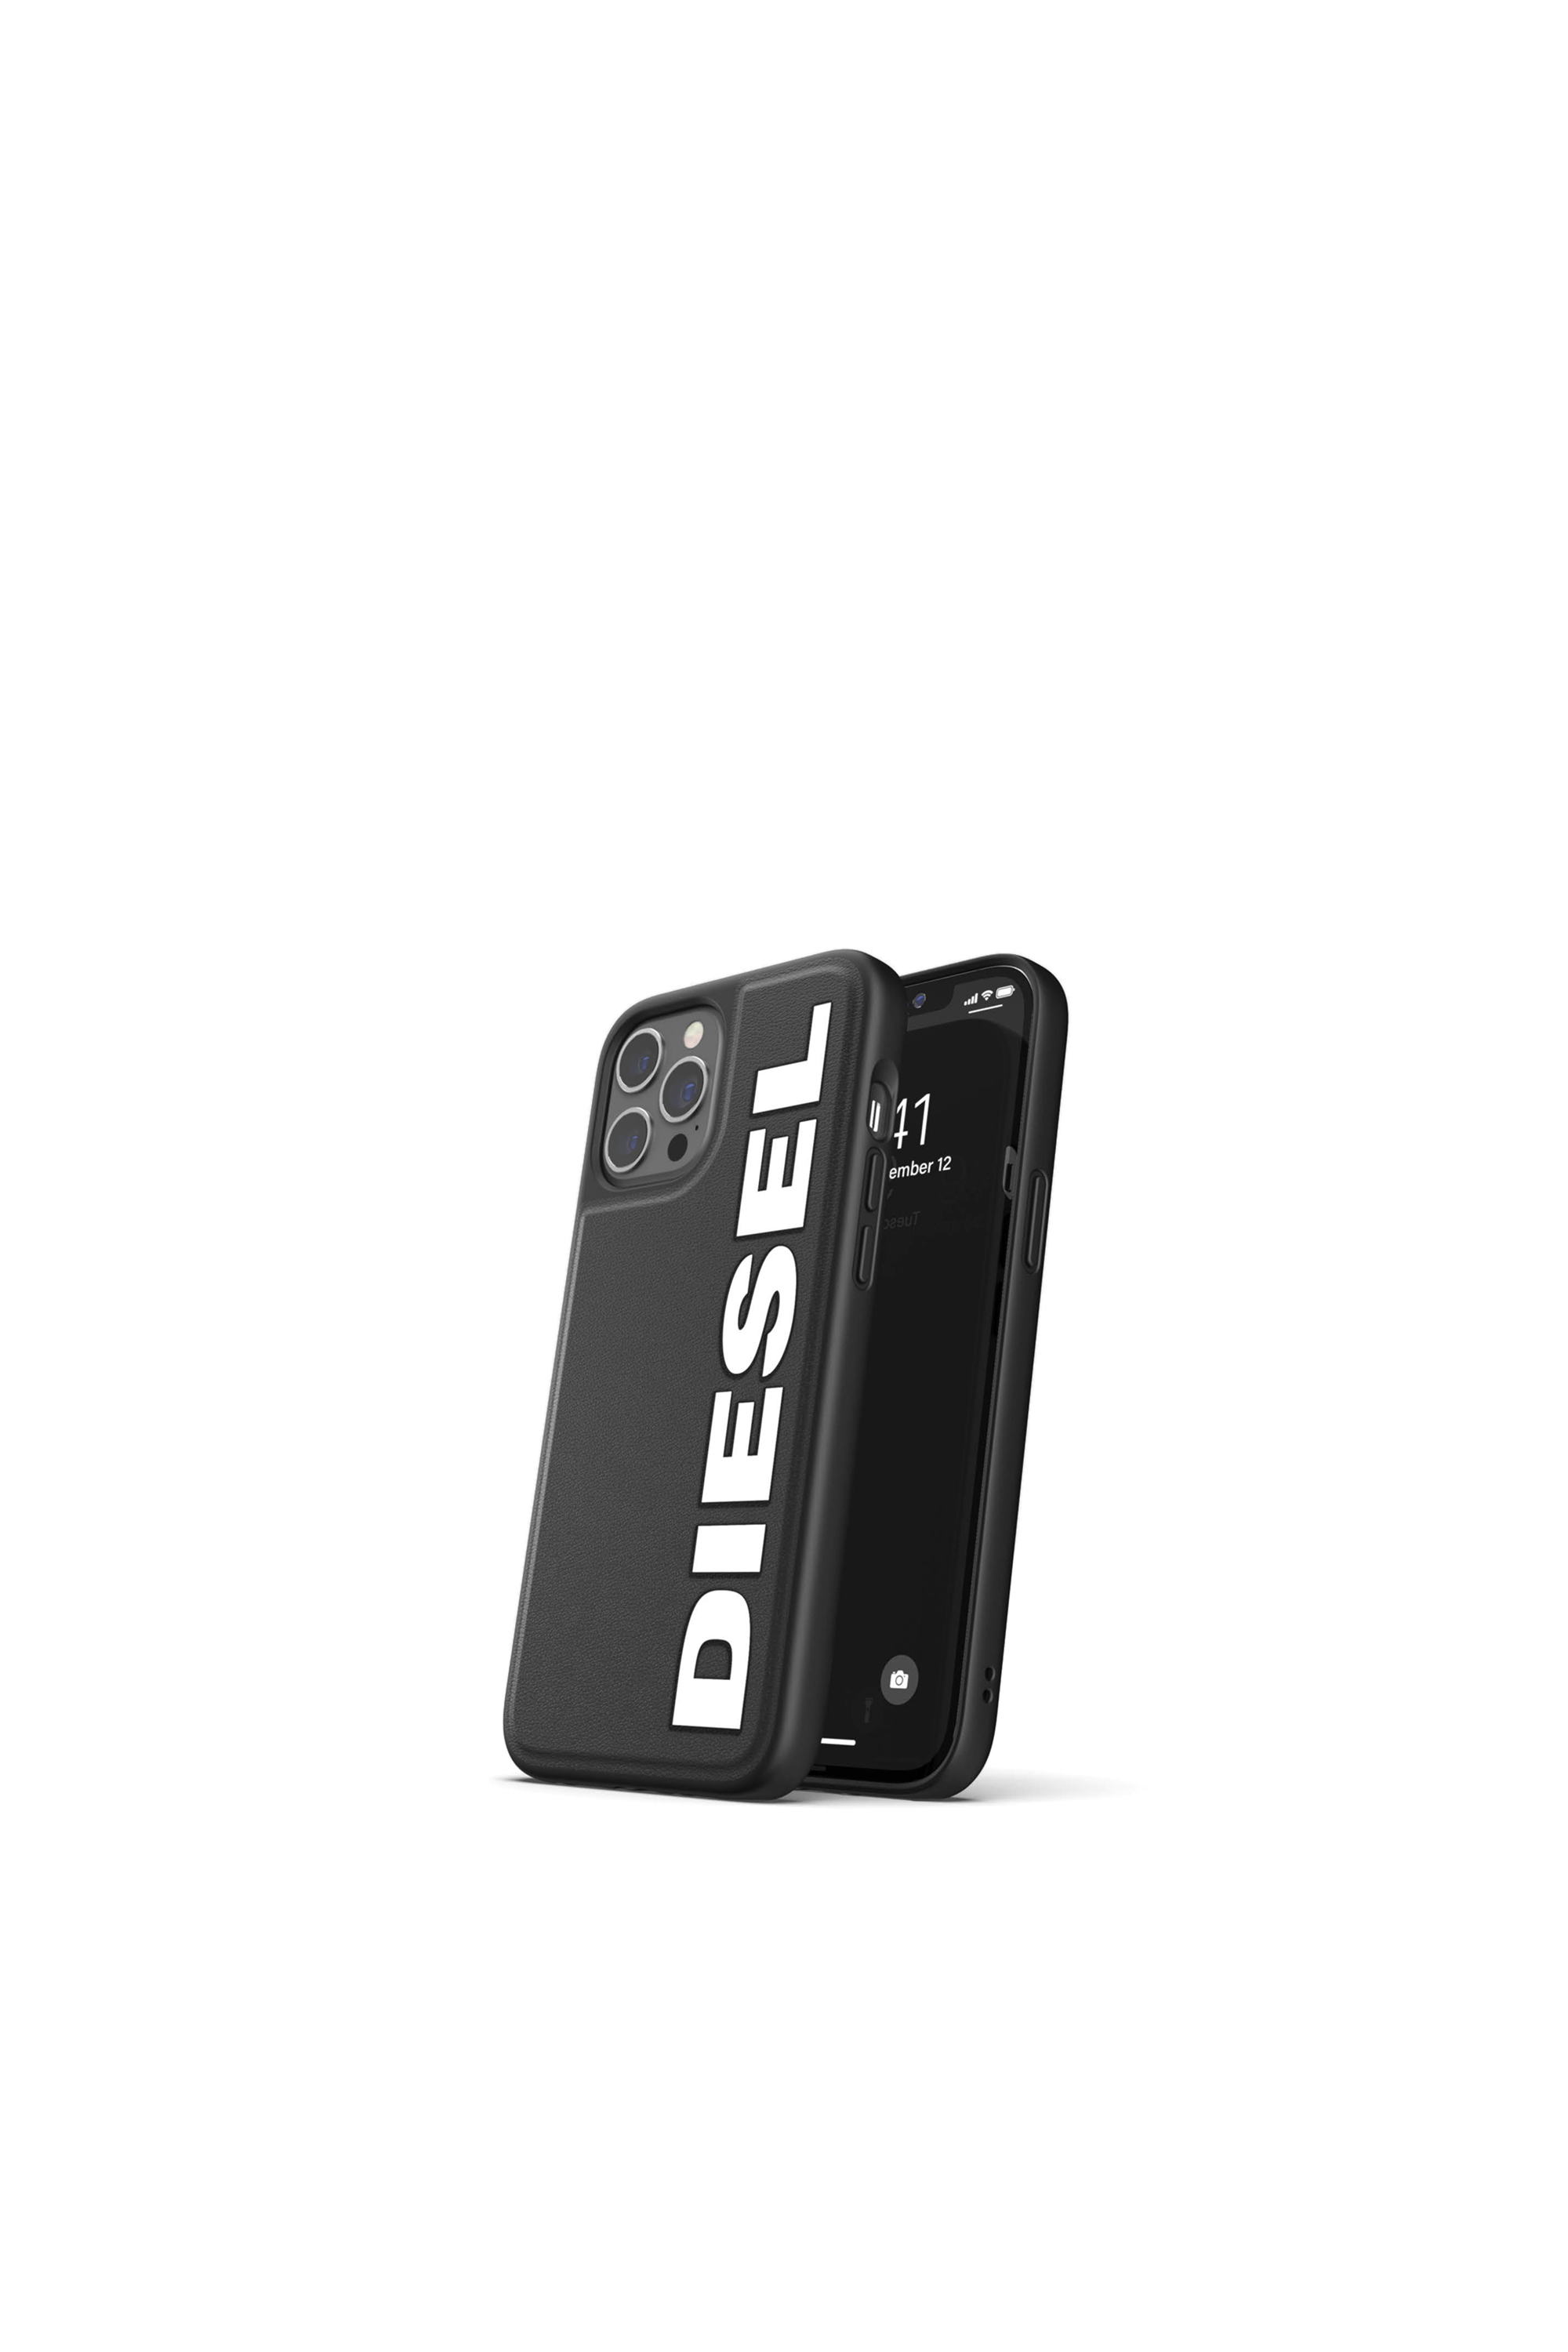 Diesel - 42493, Black - Image 3